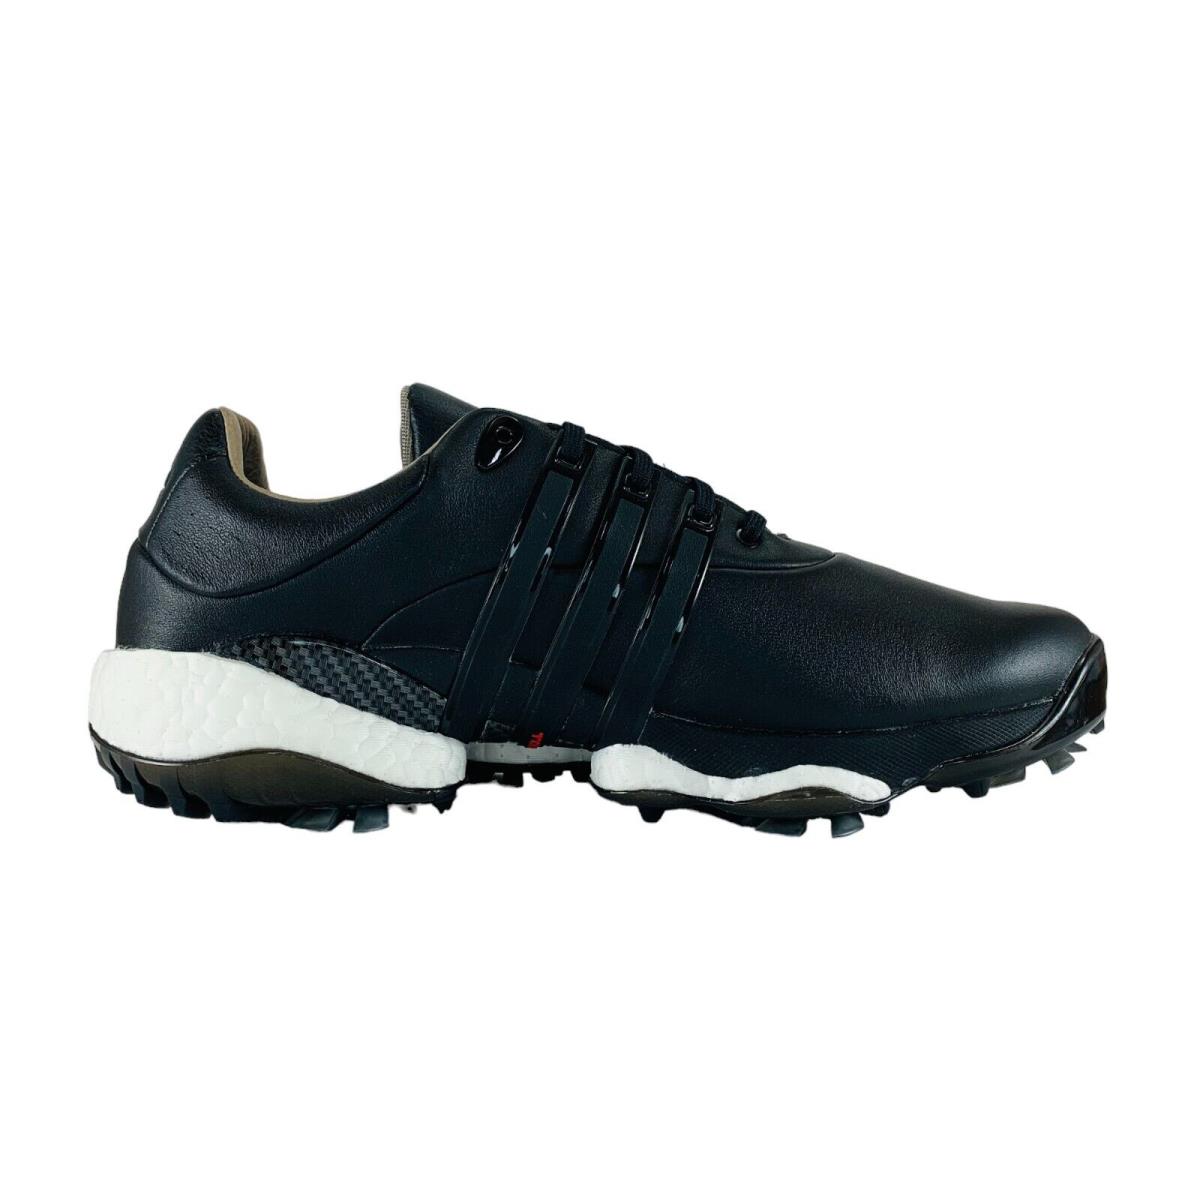 Adidas Tour 360 22 Golf Black Iron Metallic Golf Cleats GZ3158 Men`s Sizes